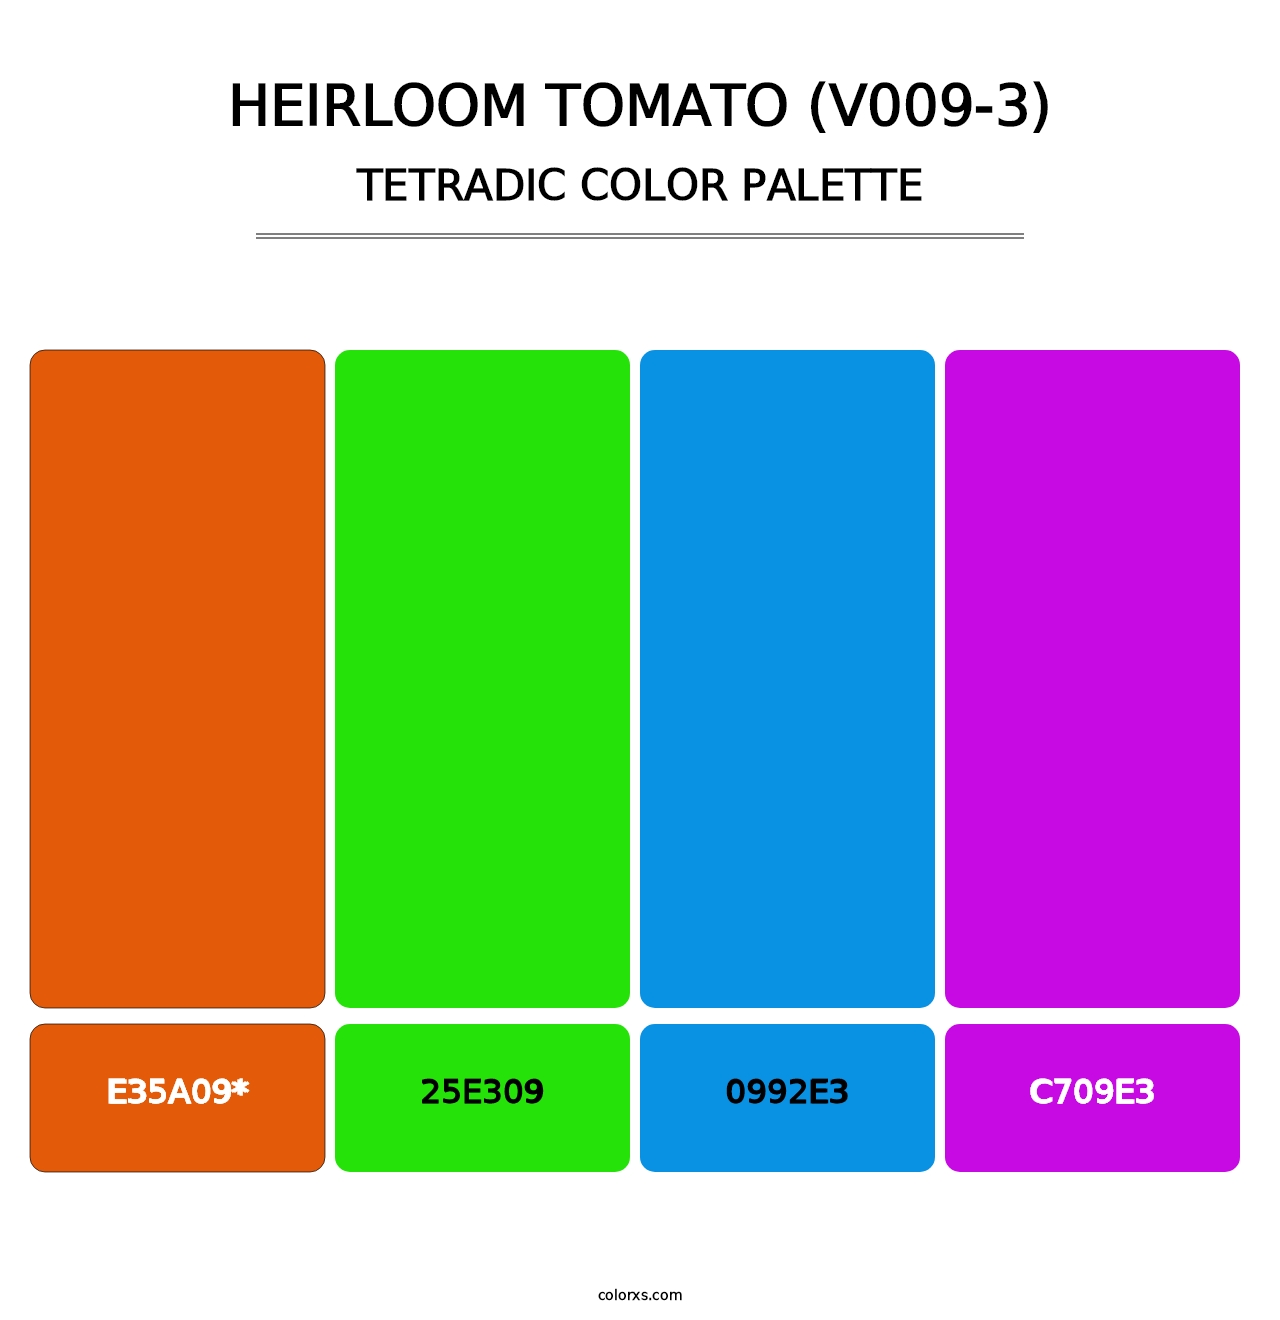 Heirloom Tomato (V009-3) - Tetradic Color Palette